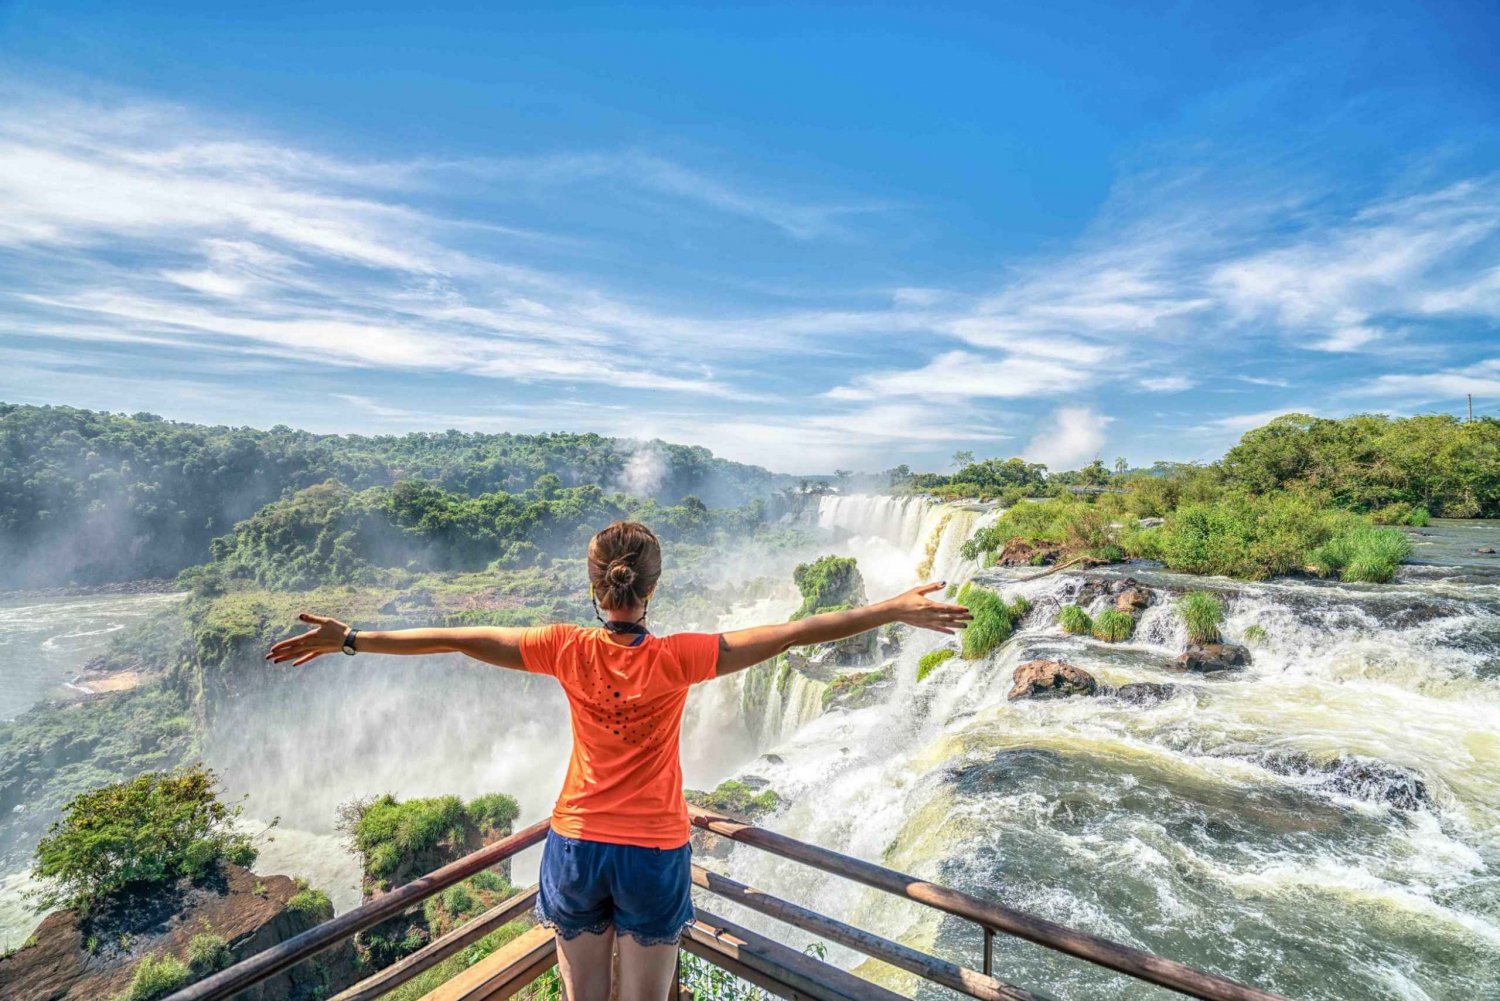 Z Foz do Iguaçu: Brazylijska strona wodospadu z biletem